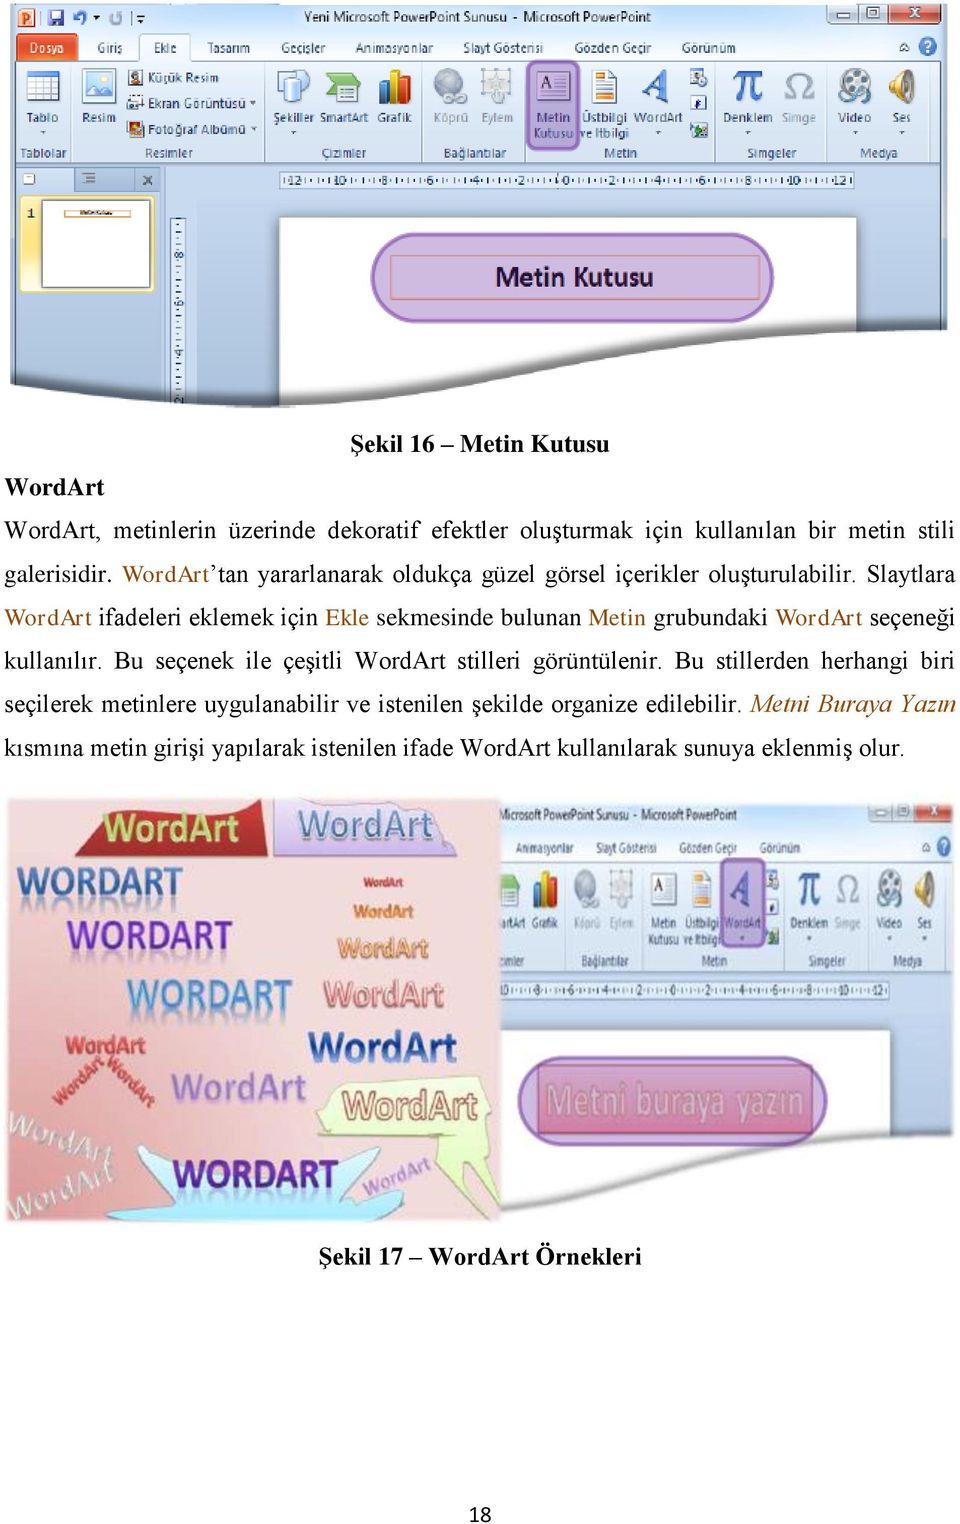 Slaytlara WordArt ifadeleri eklemek için Ekle sekmesinde bulunan Metin grubundaki WordArt seçeneği kullanılır.